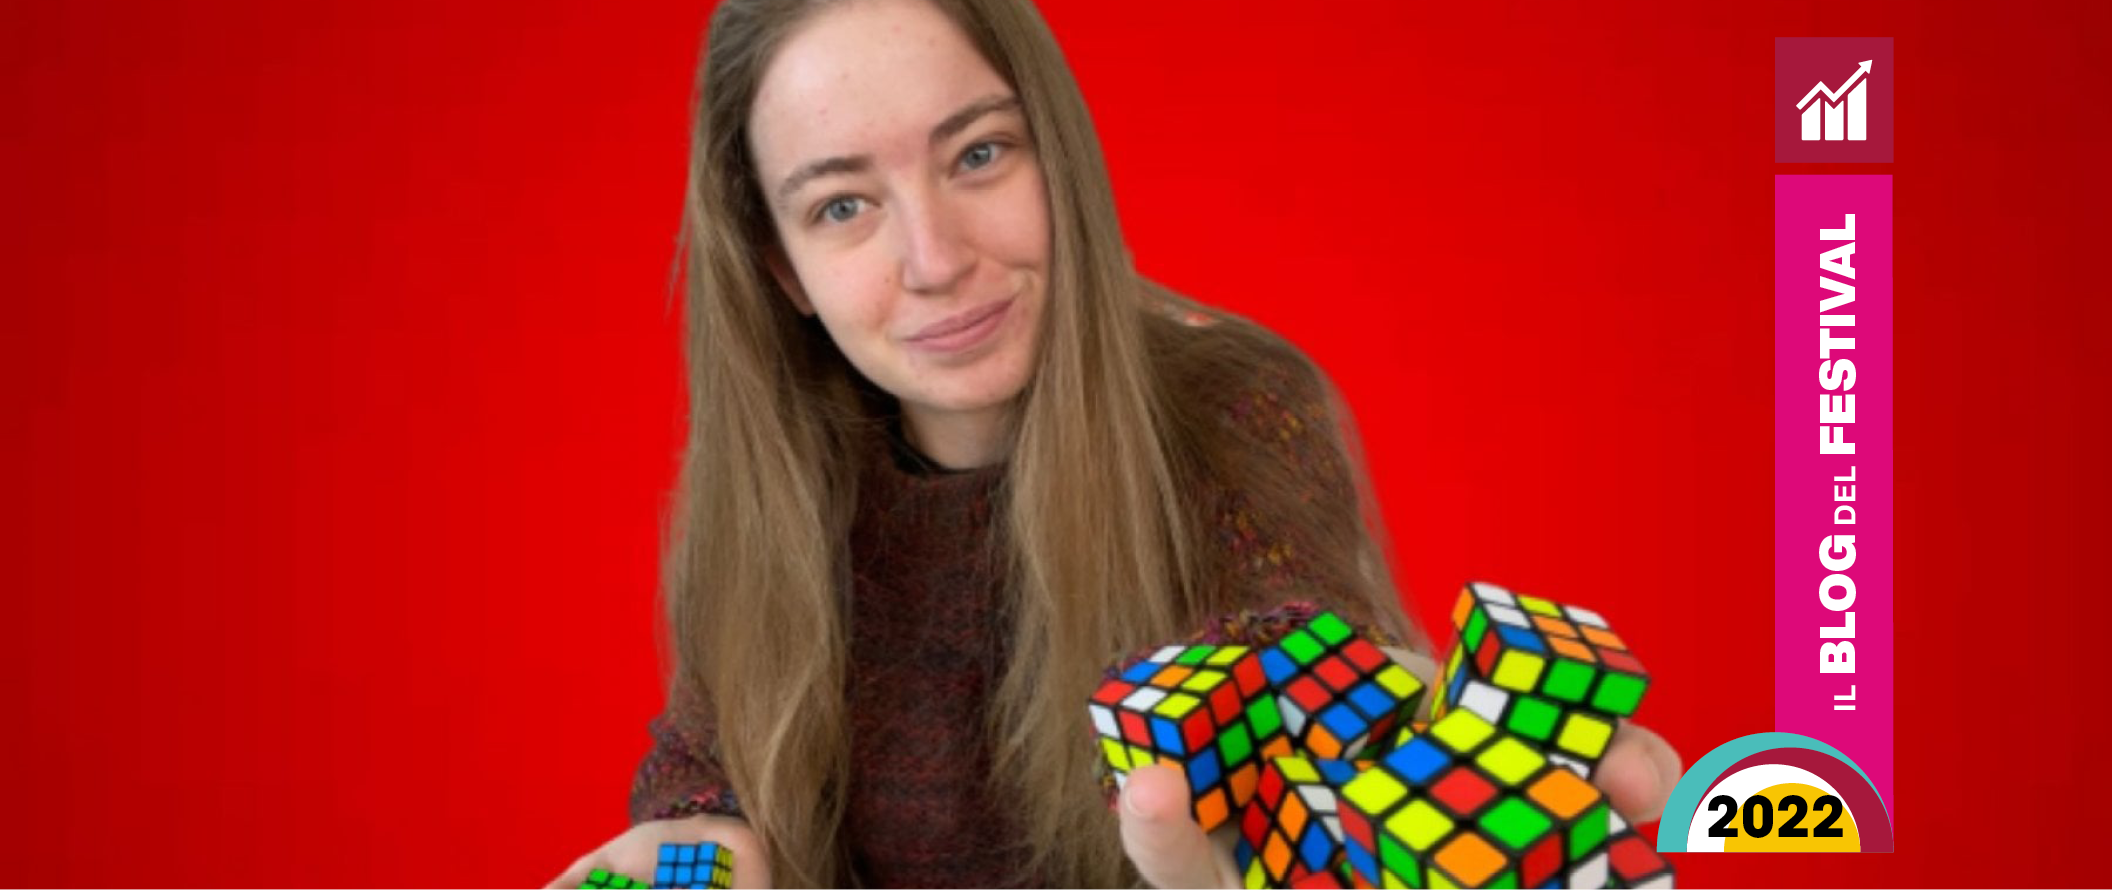 Chi è Carolina Guidetti, l’influencer di Bologna campionessa di cubo di Rubik?